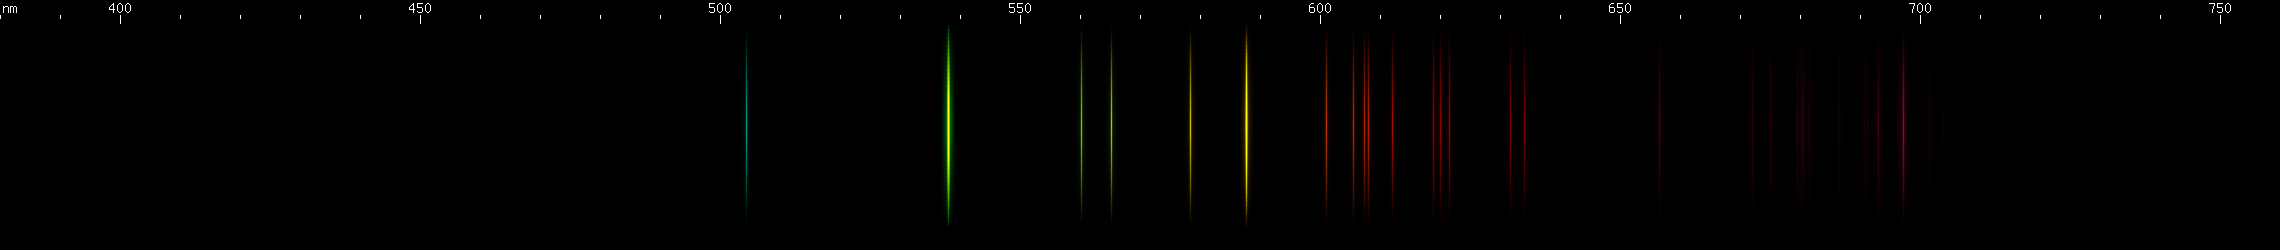 Spectral Lines of Neptunium